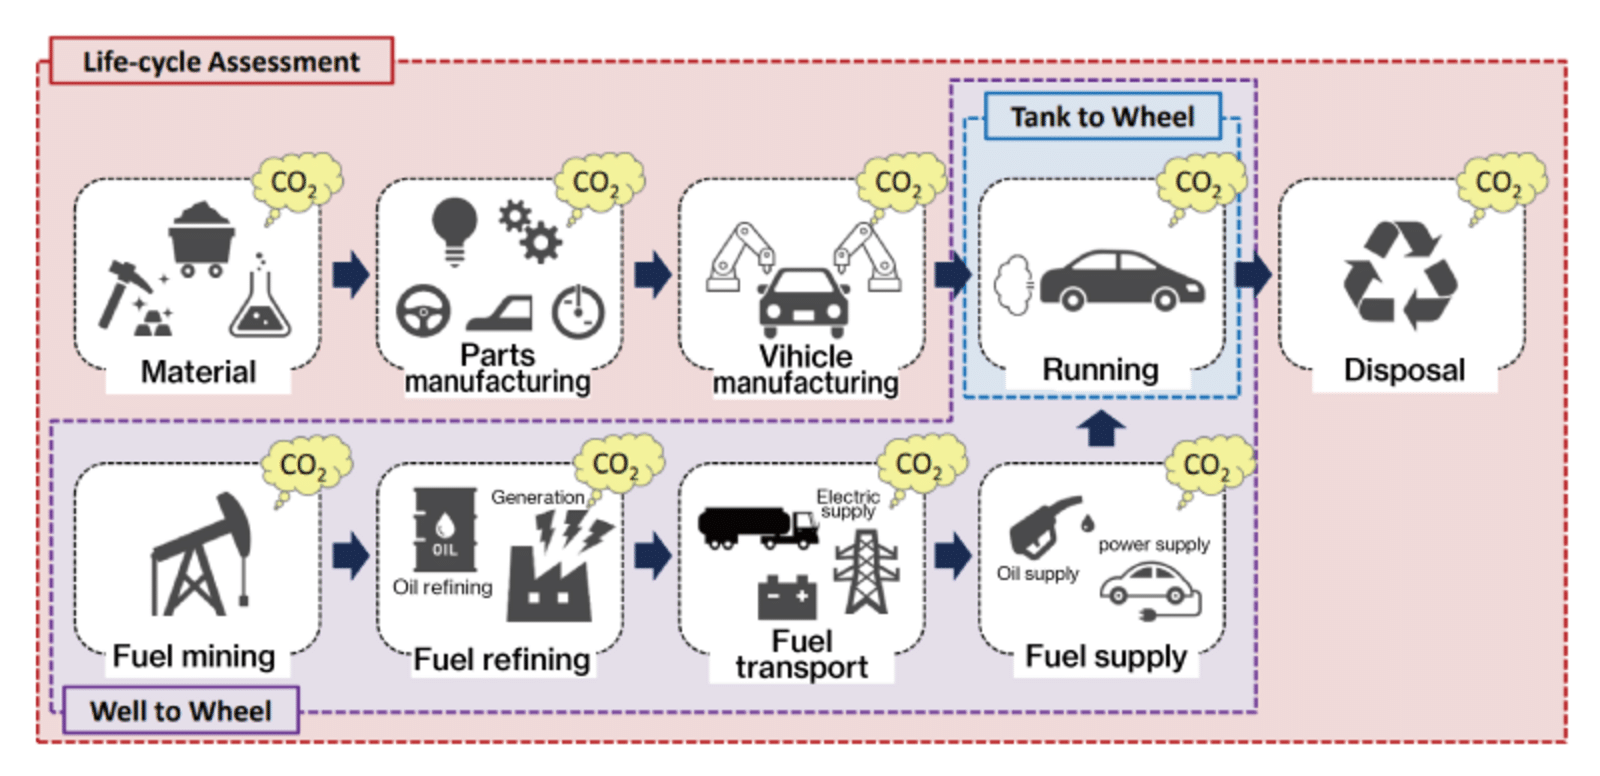 LCA-exempel scope 3-utsläpp för bilar